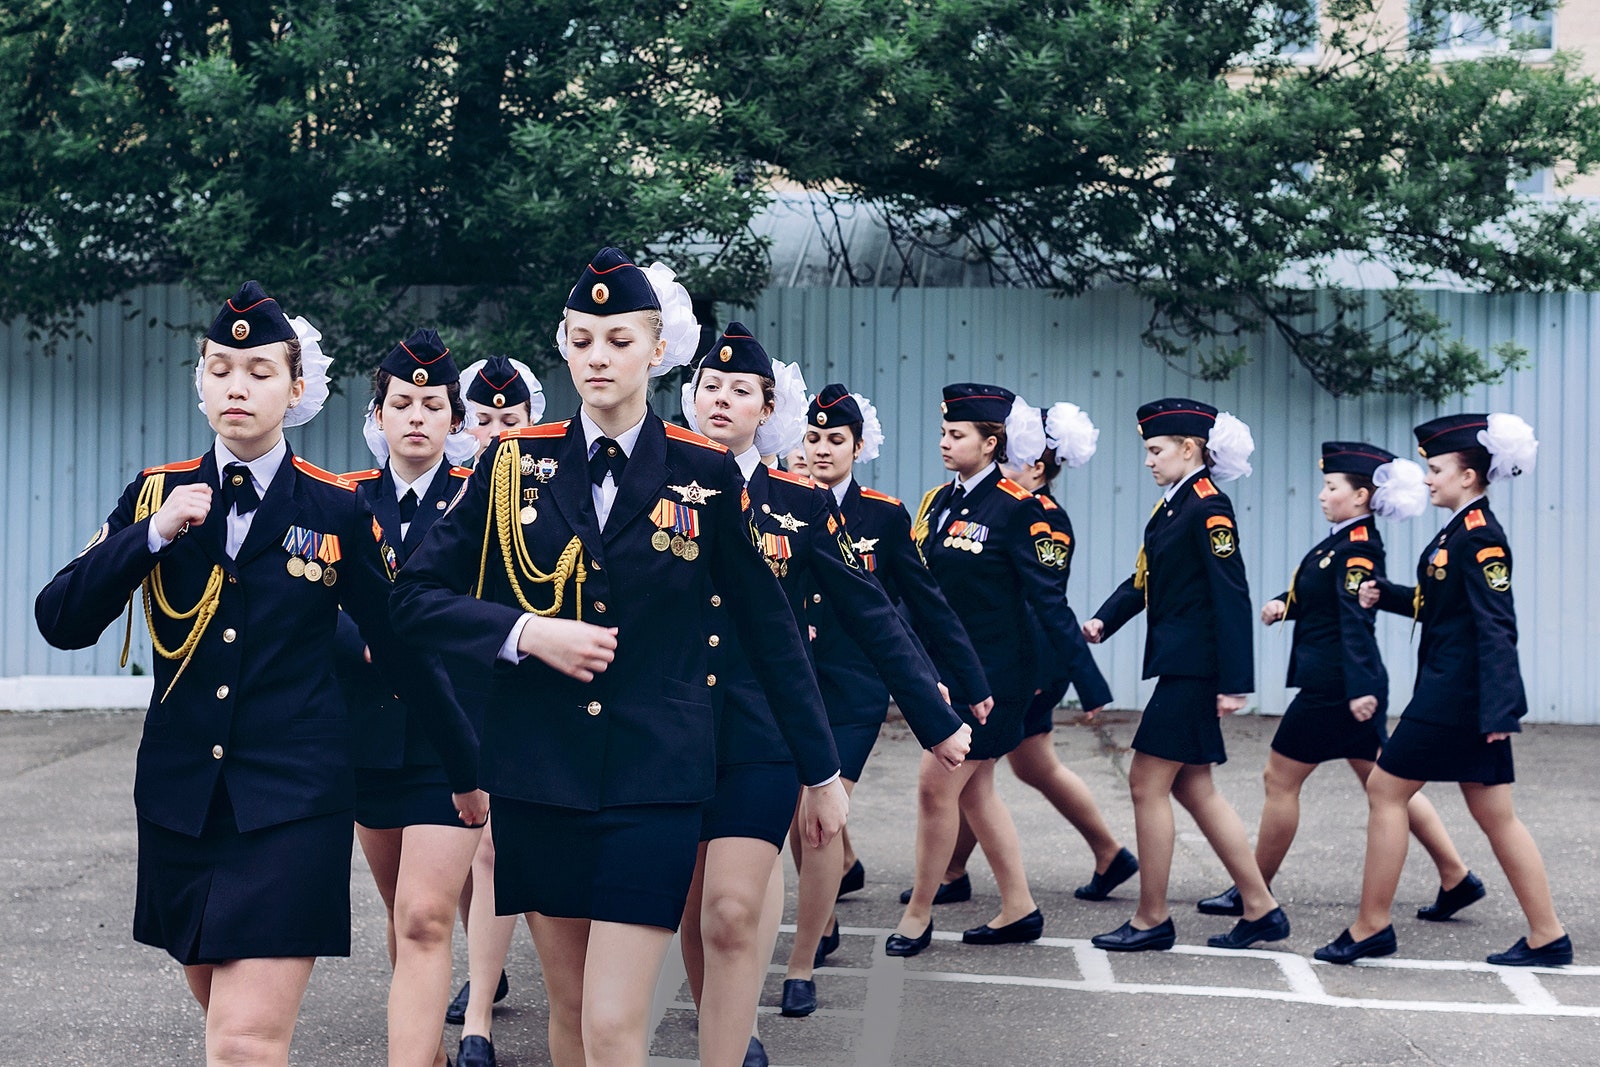 Репортаж из кадетского корпуса как живут девочки в военной форме